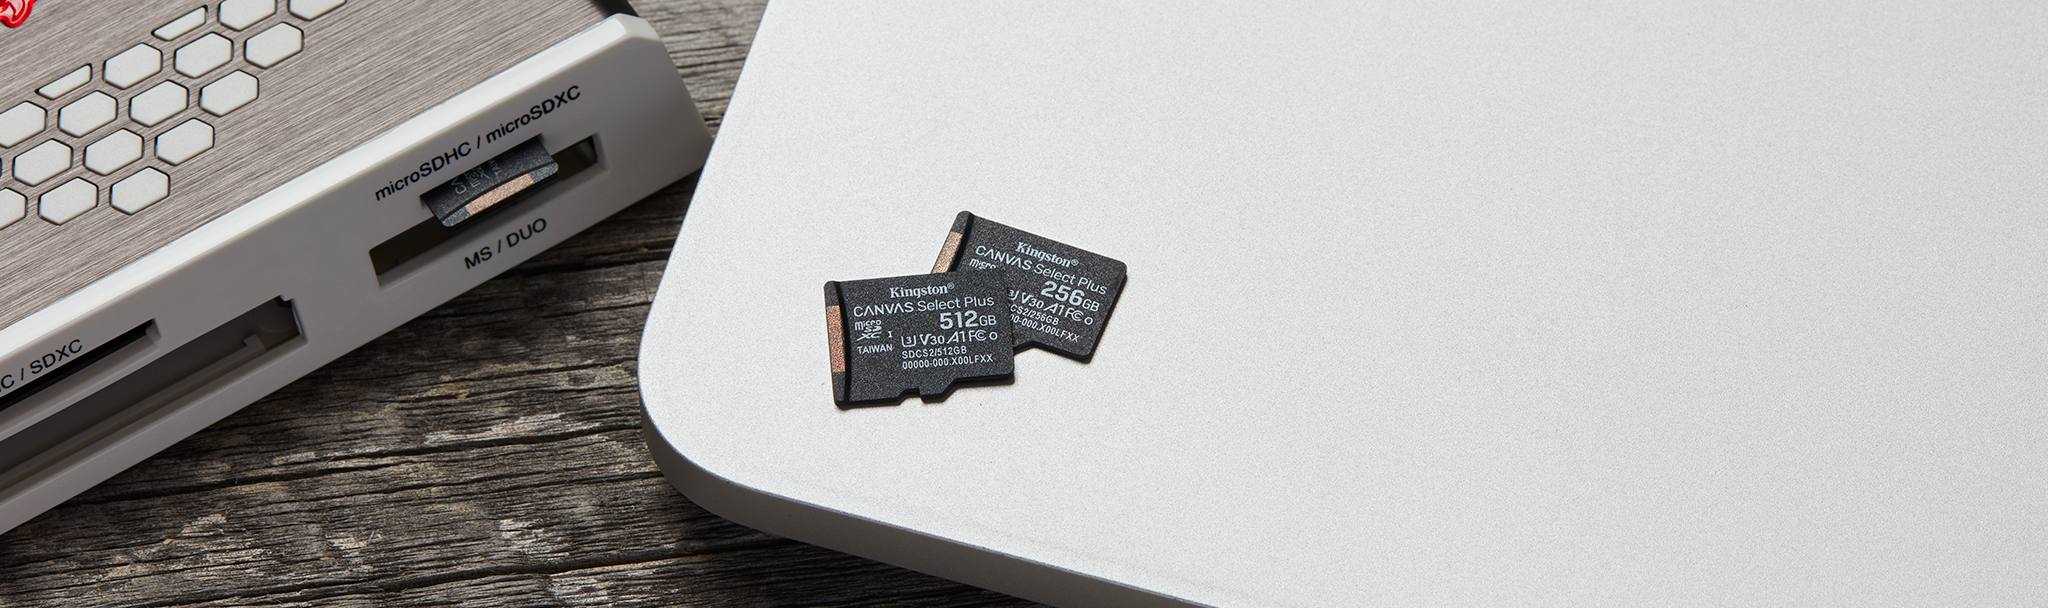 microSD のクローズアップ画像